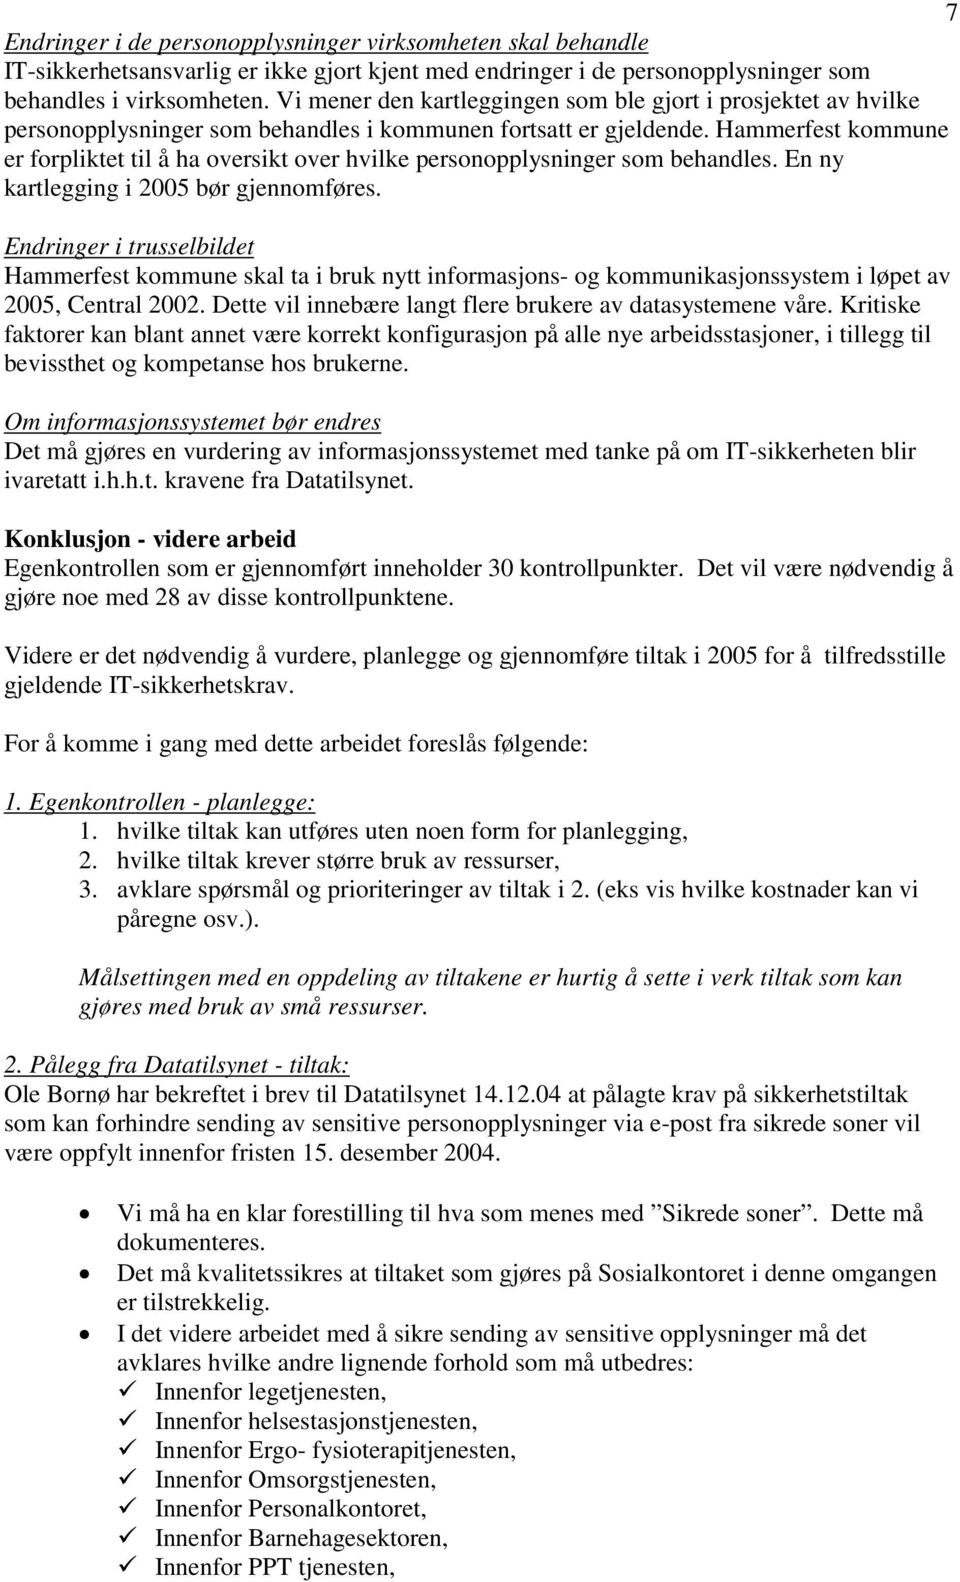 Hammerfest kommune er forpliktet til å ha oversikt over hvilke personopplysninger som behandles. En ny kartlegging i 2005 bør gjennomføres.